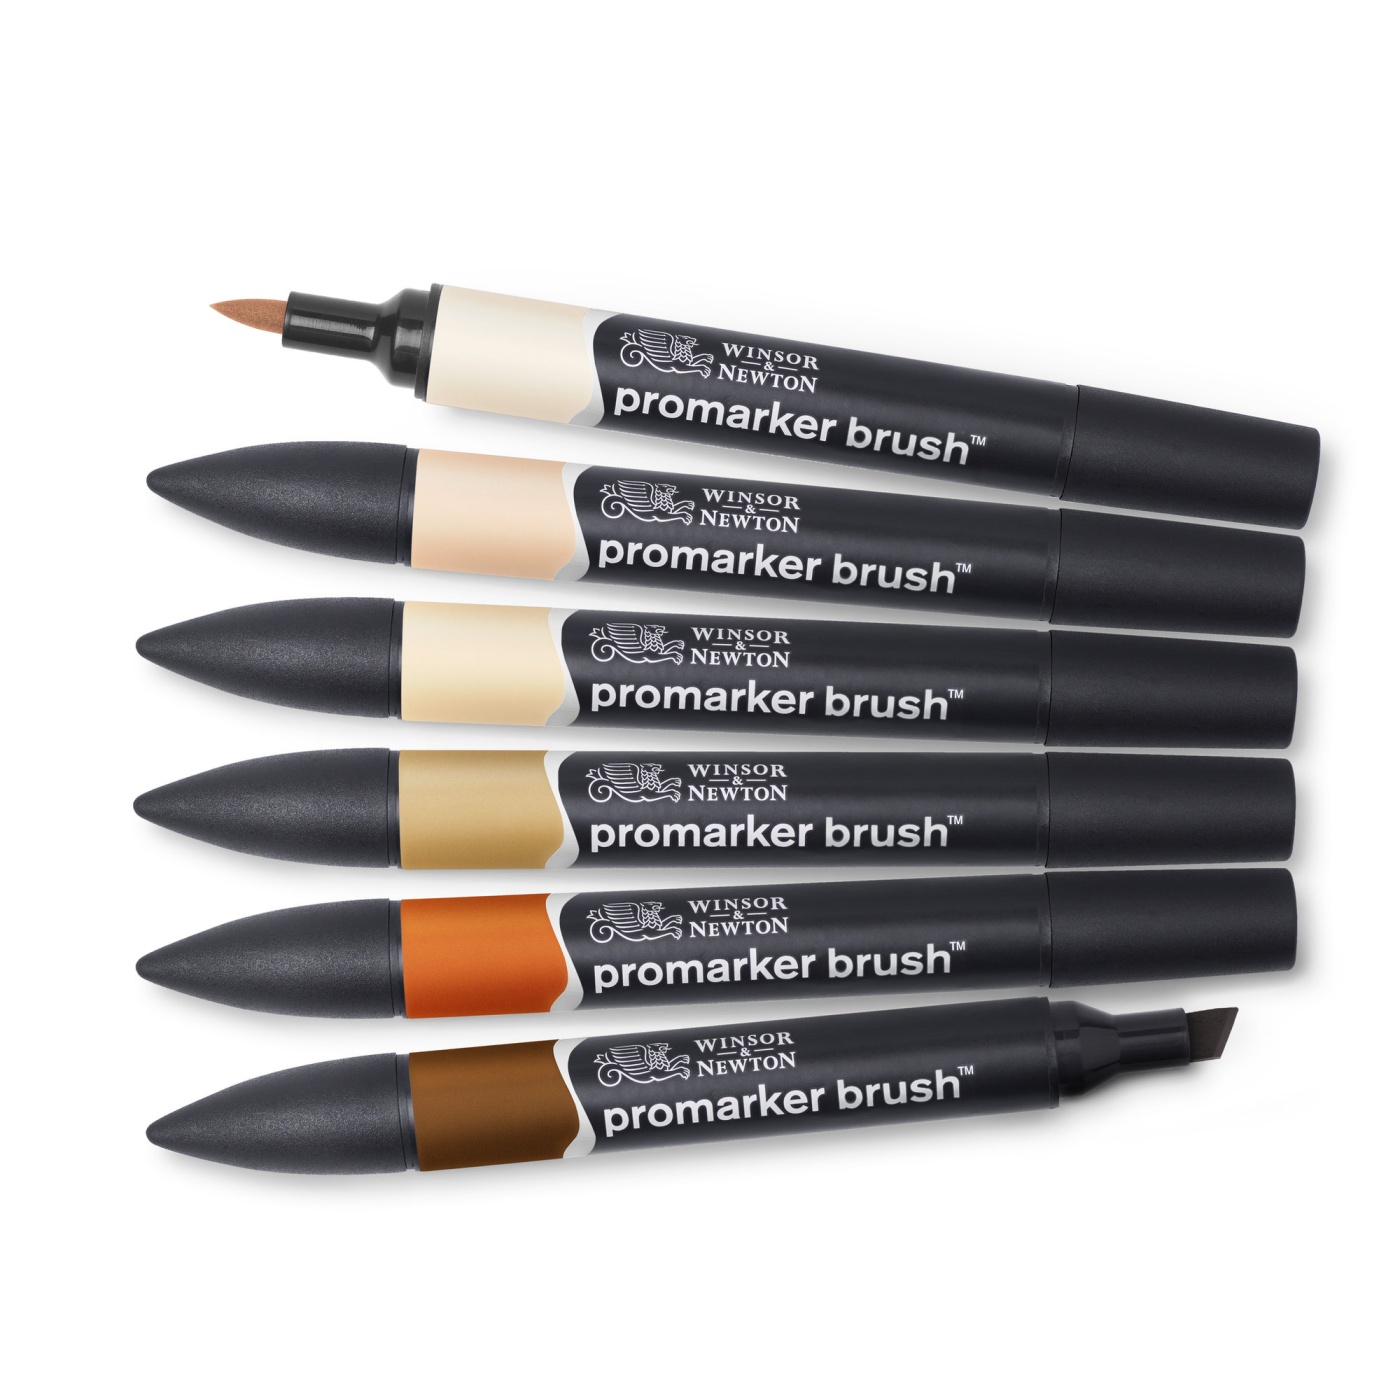 ProMarker Brush 6er-Set Skin Tones in der Gruppe Stifte / Künstlerstifte / Illustrationsmarker bei Pen Store (100553)